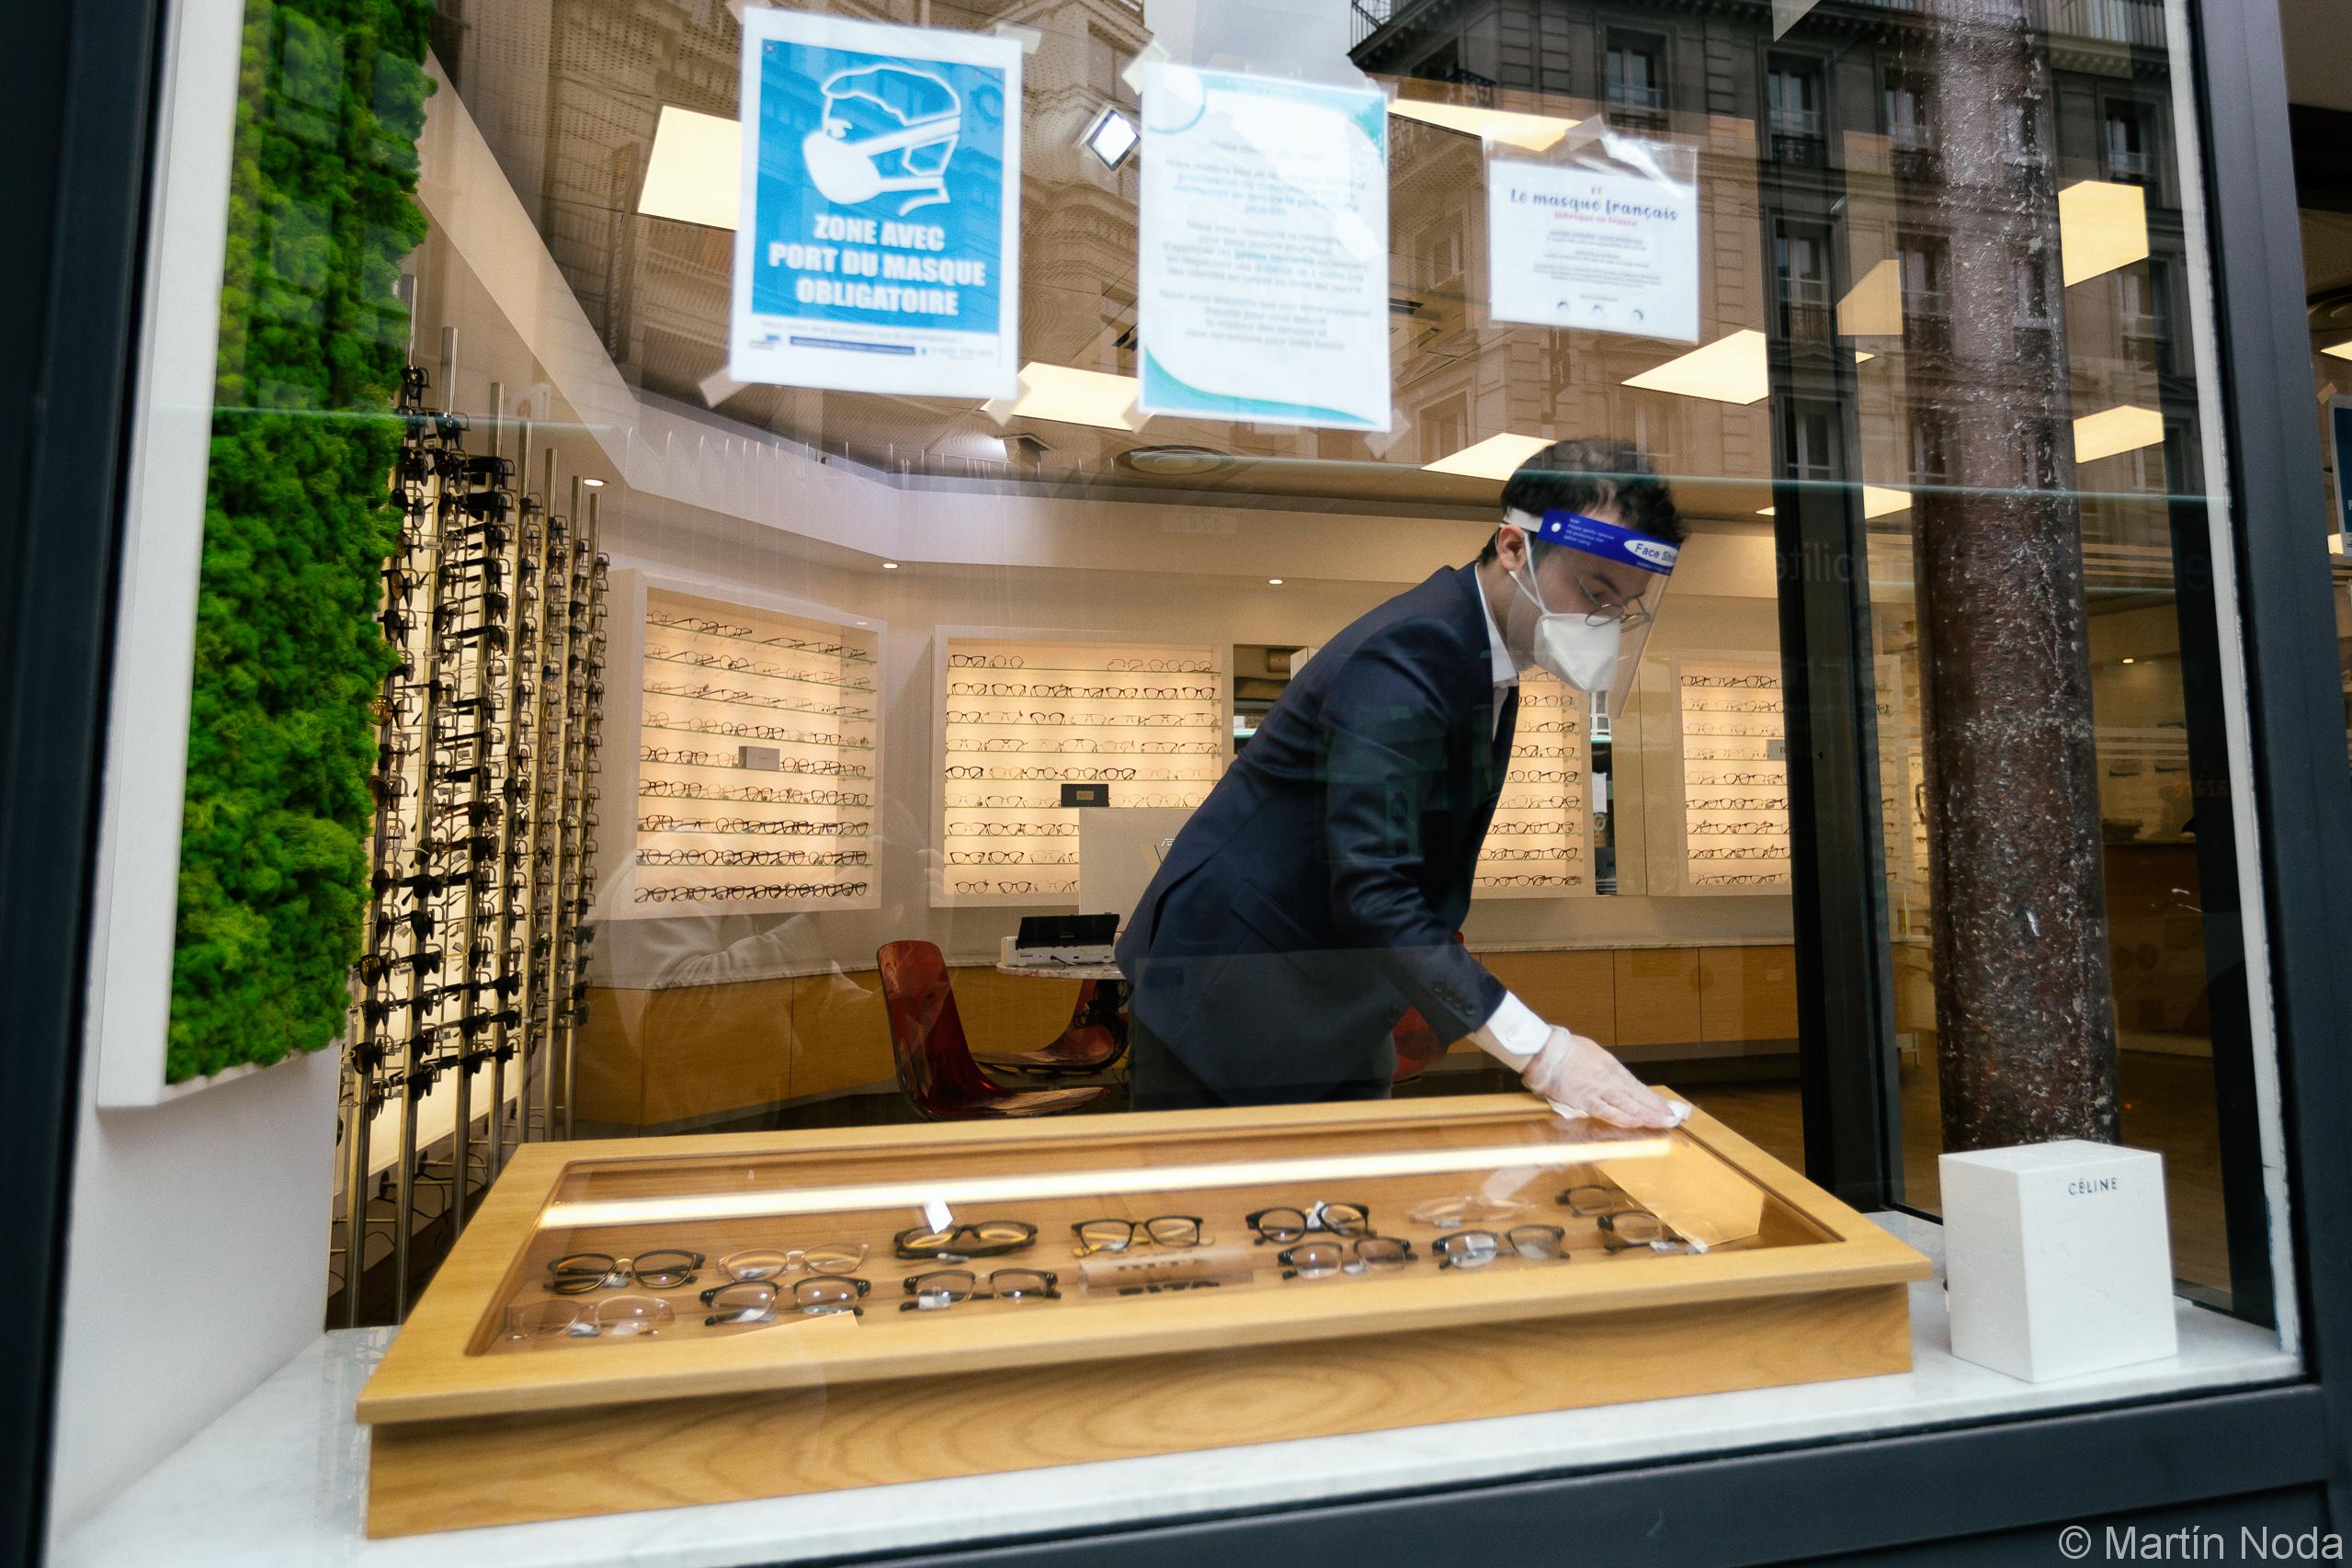 Un opticien, portant une masque, une visiere et des gants, nettoie la vitrine en vue de l ouverture du magasin, Paris, 11 mai 2020.